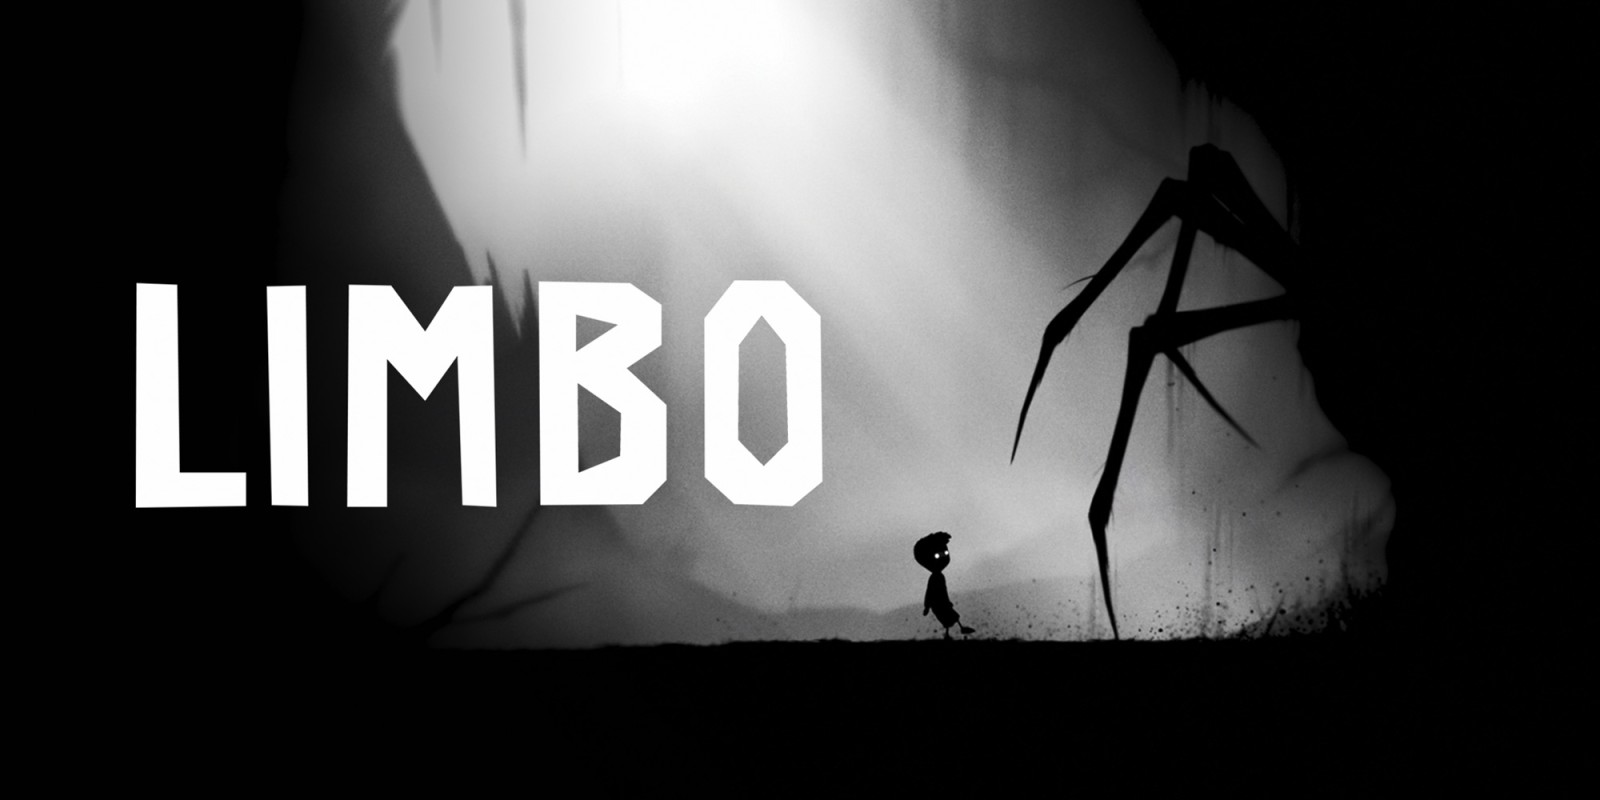 دانلود بازی زیبا و جذاب Limbo برای کامپیوتر